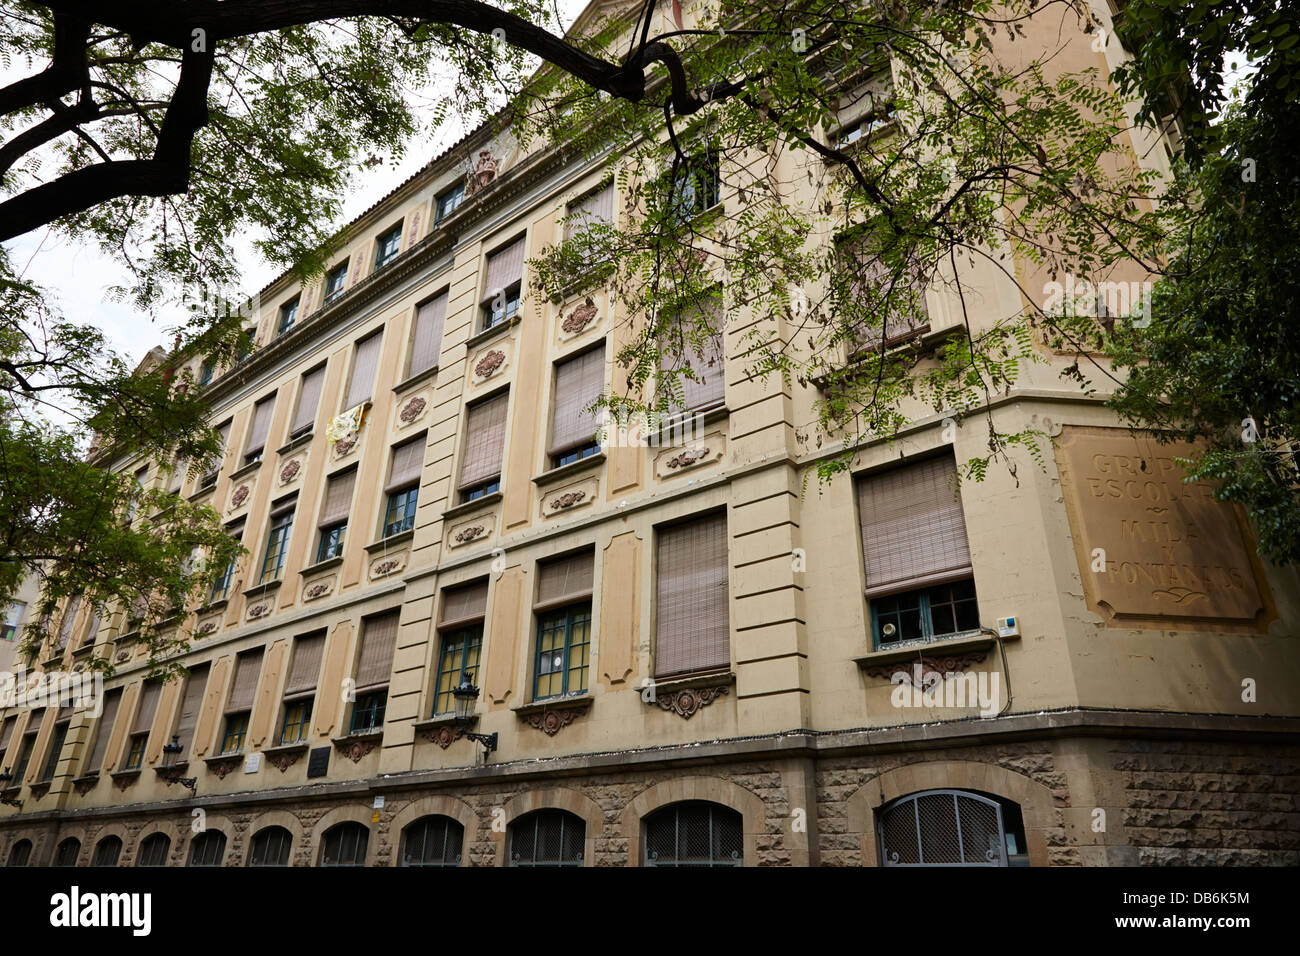 grupo escolar mila y fontanals school former convent el raval Barcelona Catalonia Spain Stock Photo